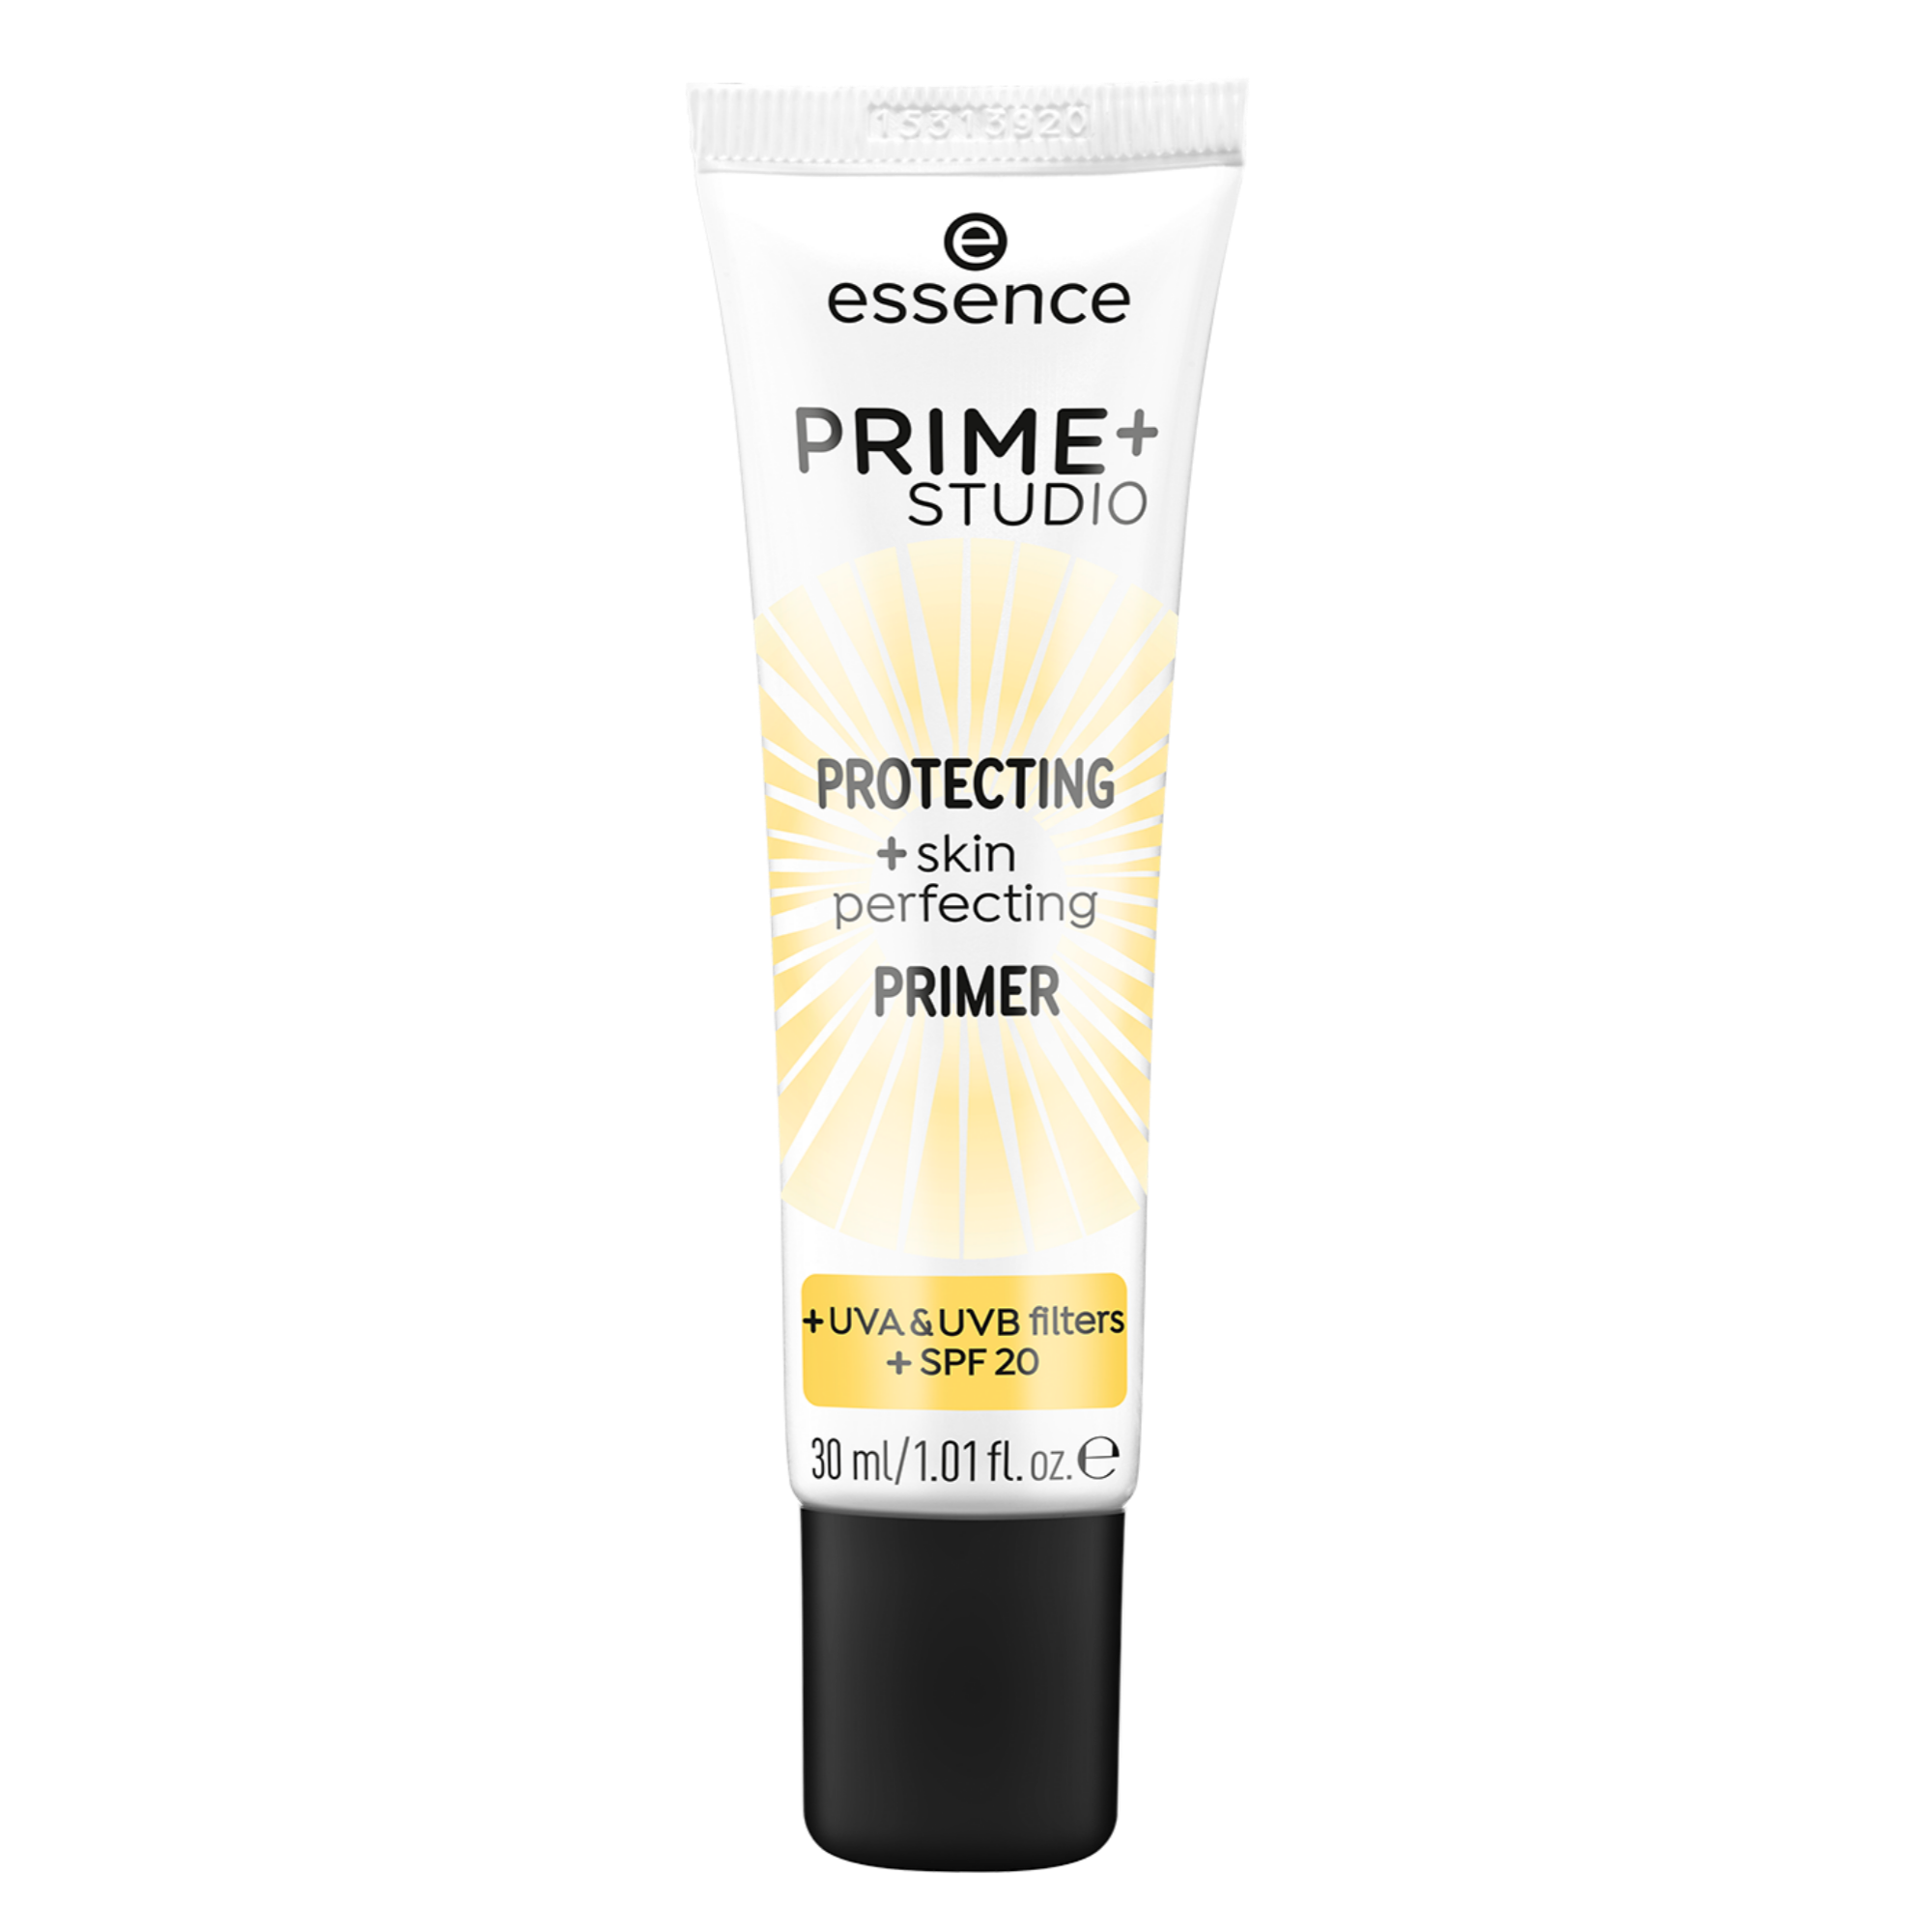 PRIME+ STUDIO PROTECTING +skin perfecting PRIMER